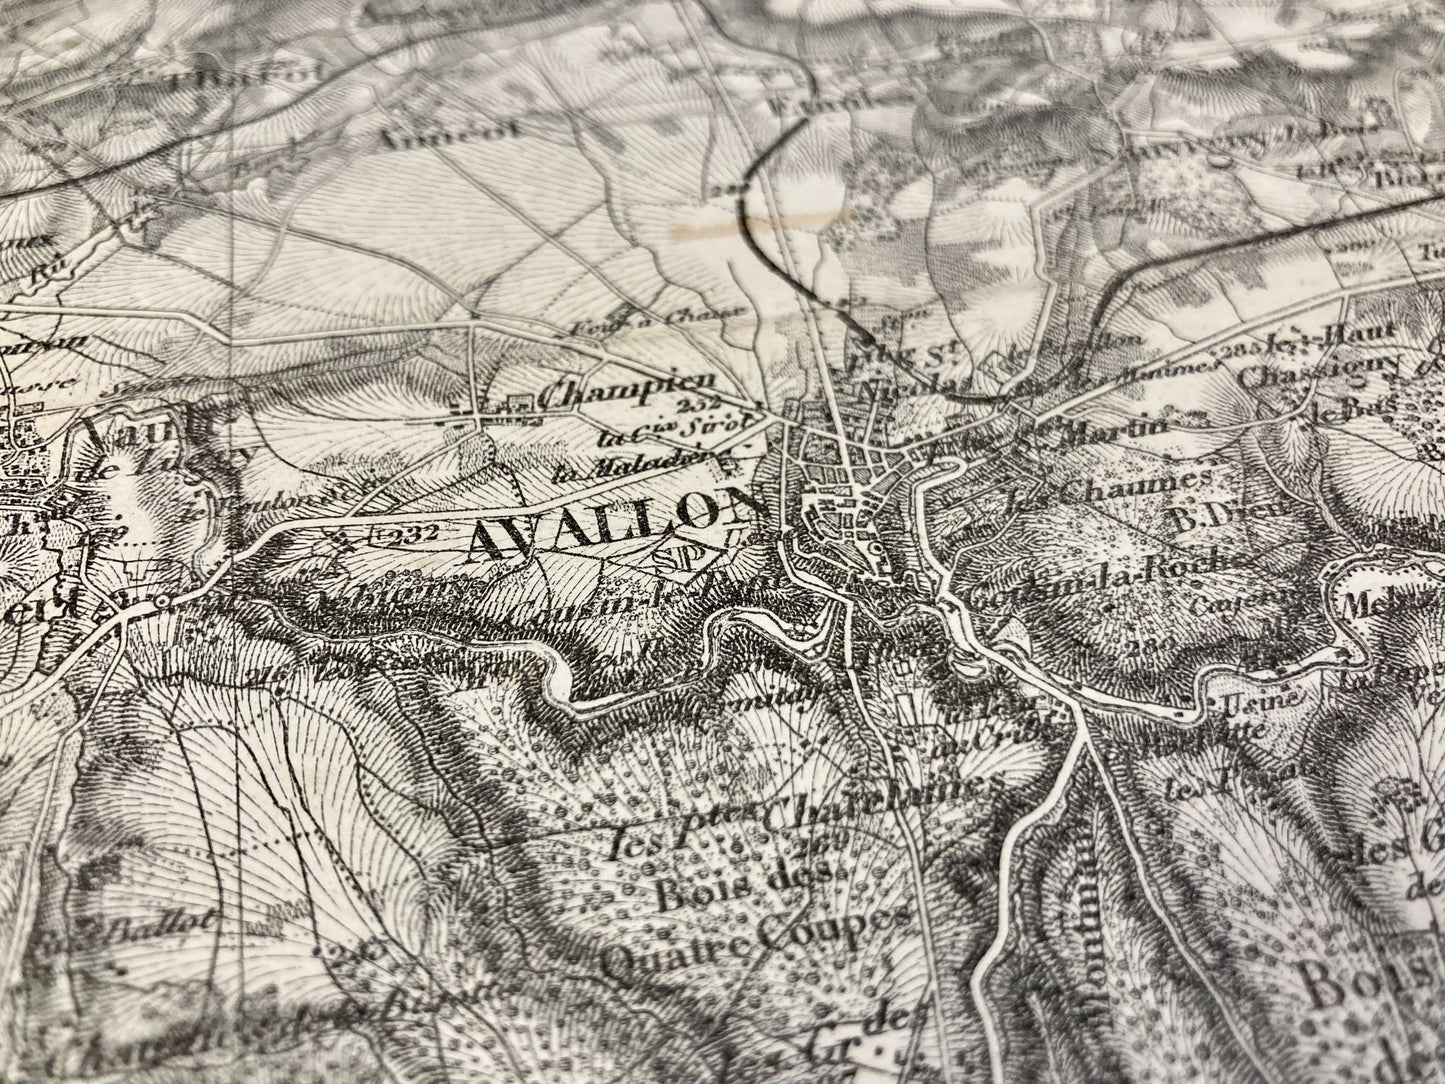 Détail de la carte d'Etat-Major d'Avallon